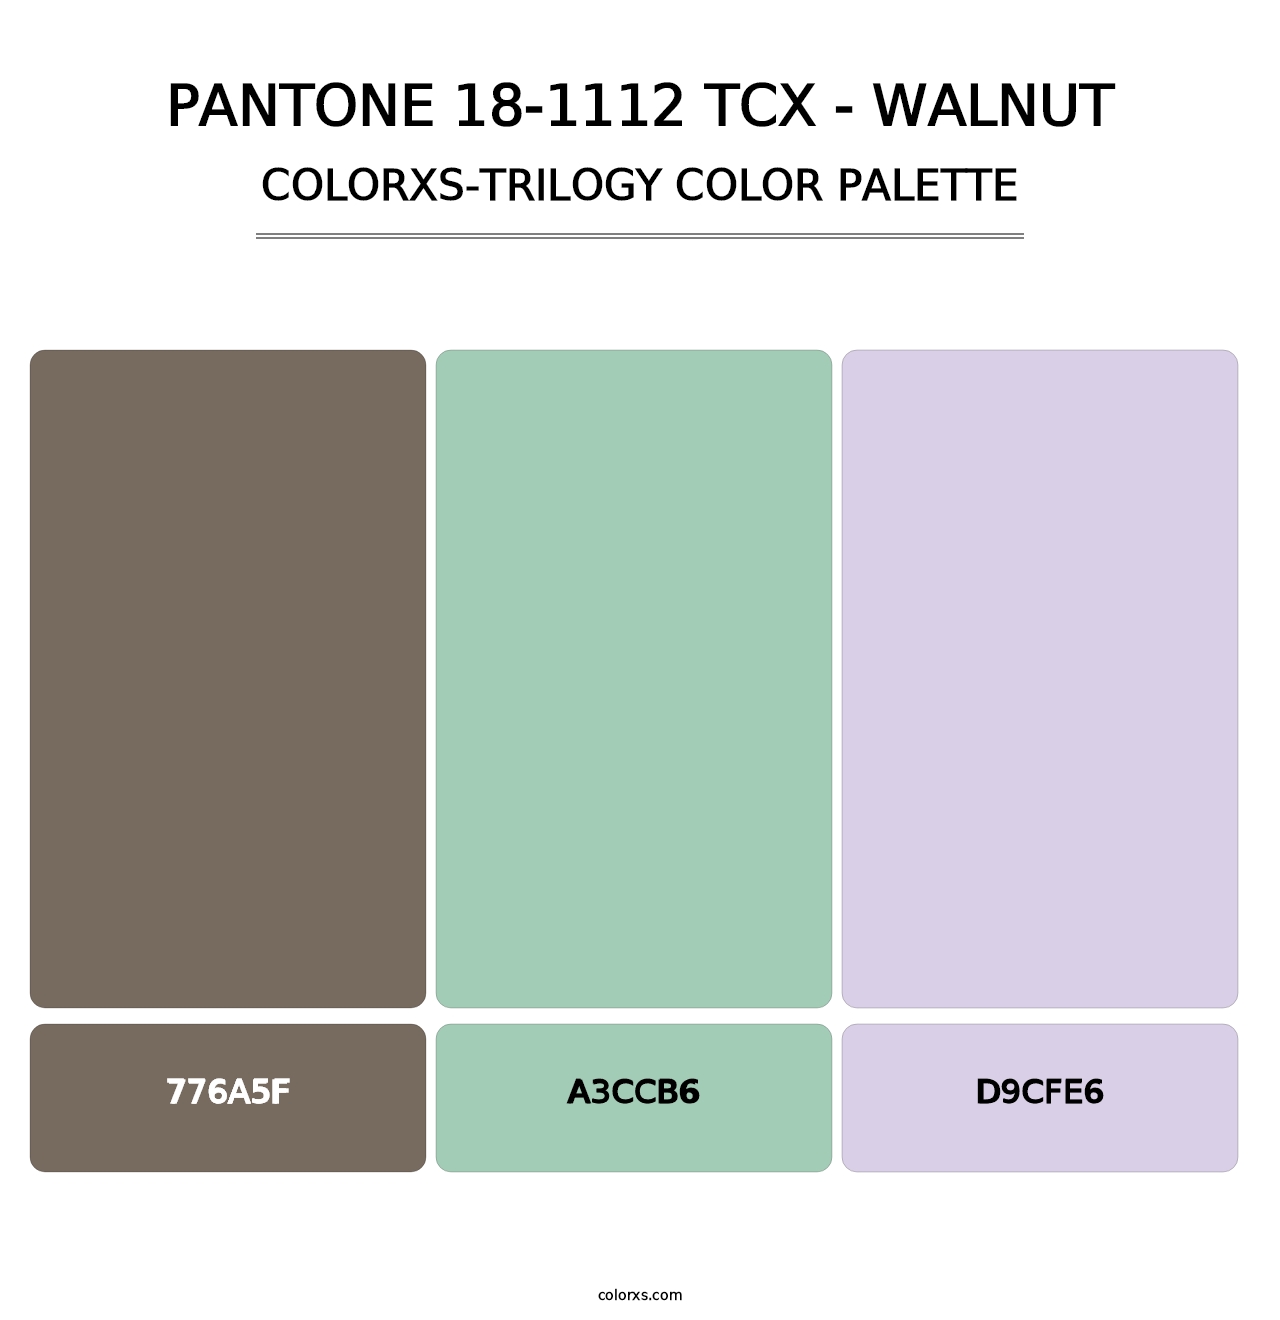 PANTONE 18-1112 TCX - Walnut - Colorxs Trilogy Palette